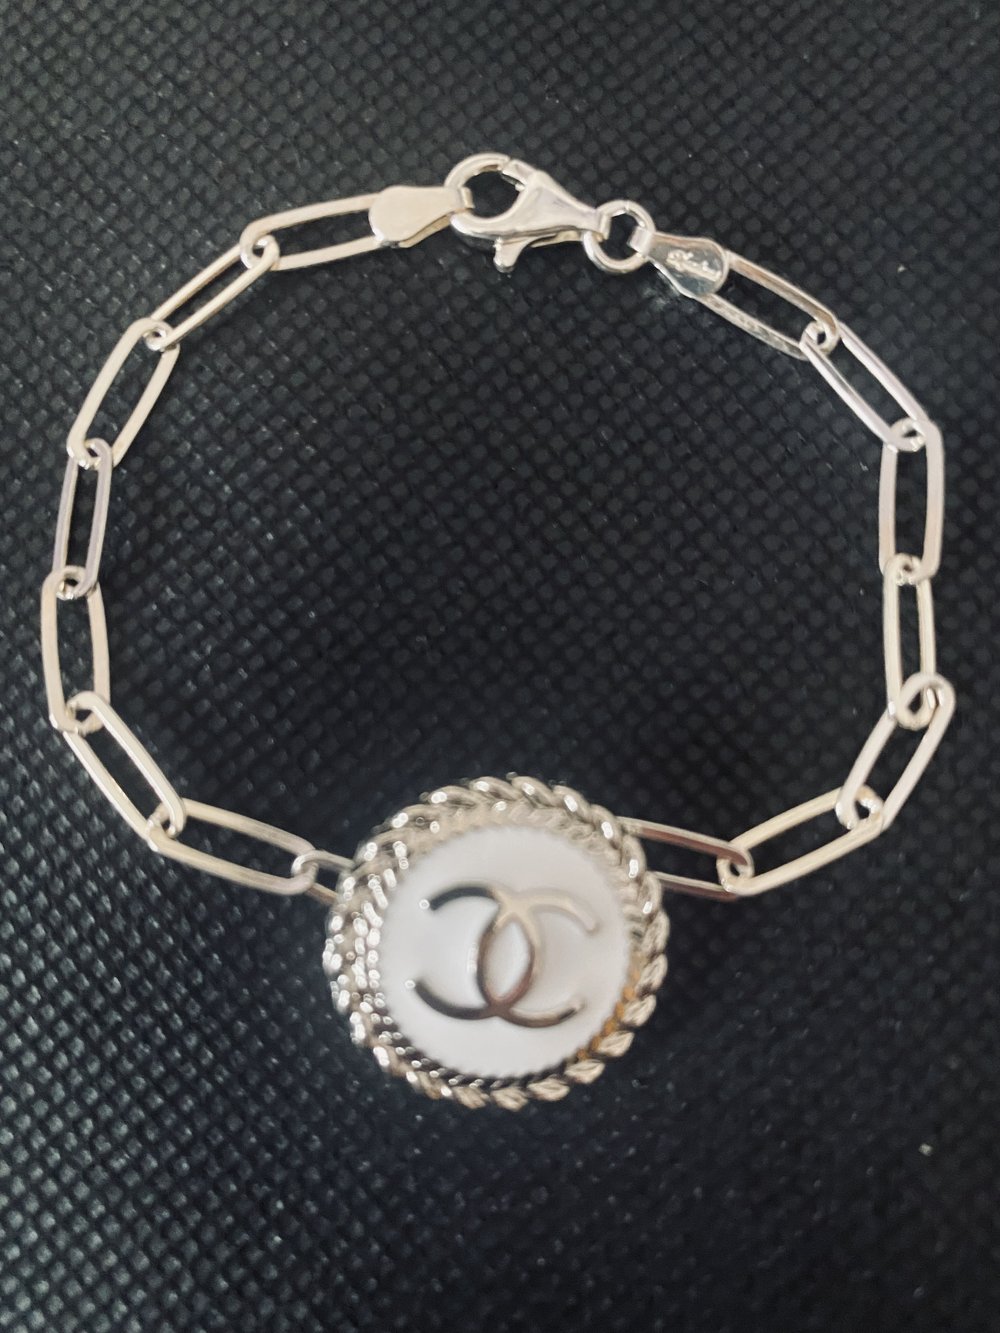 chanel bracelet silver new